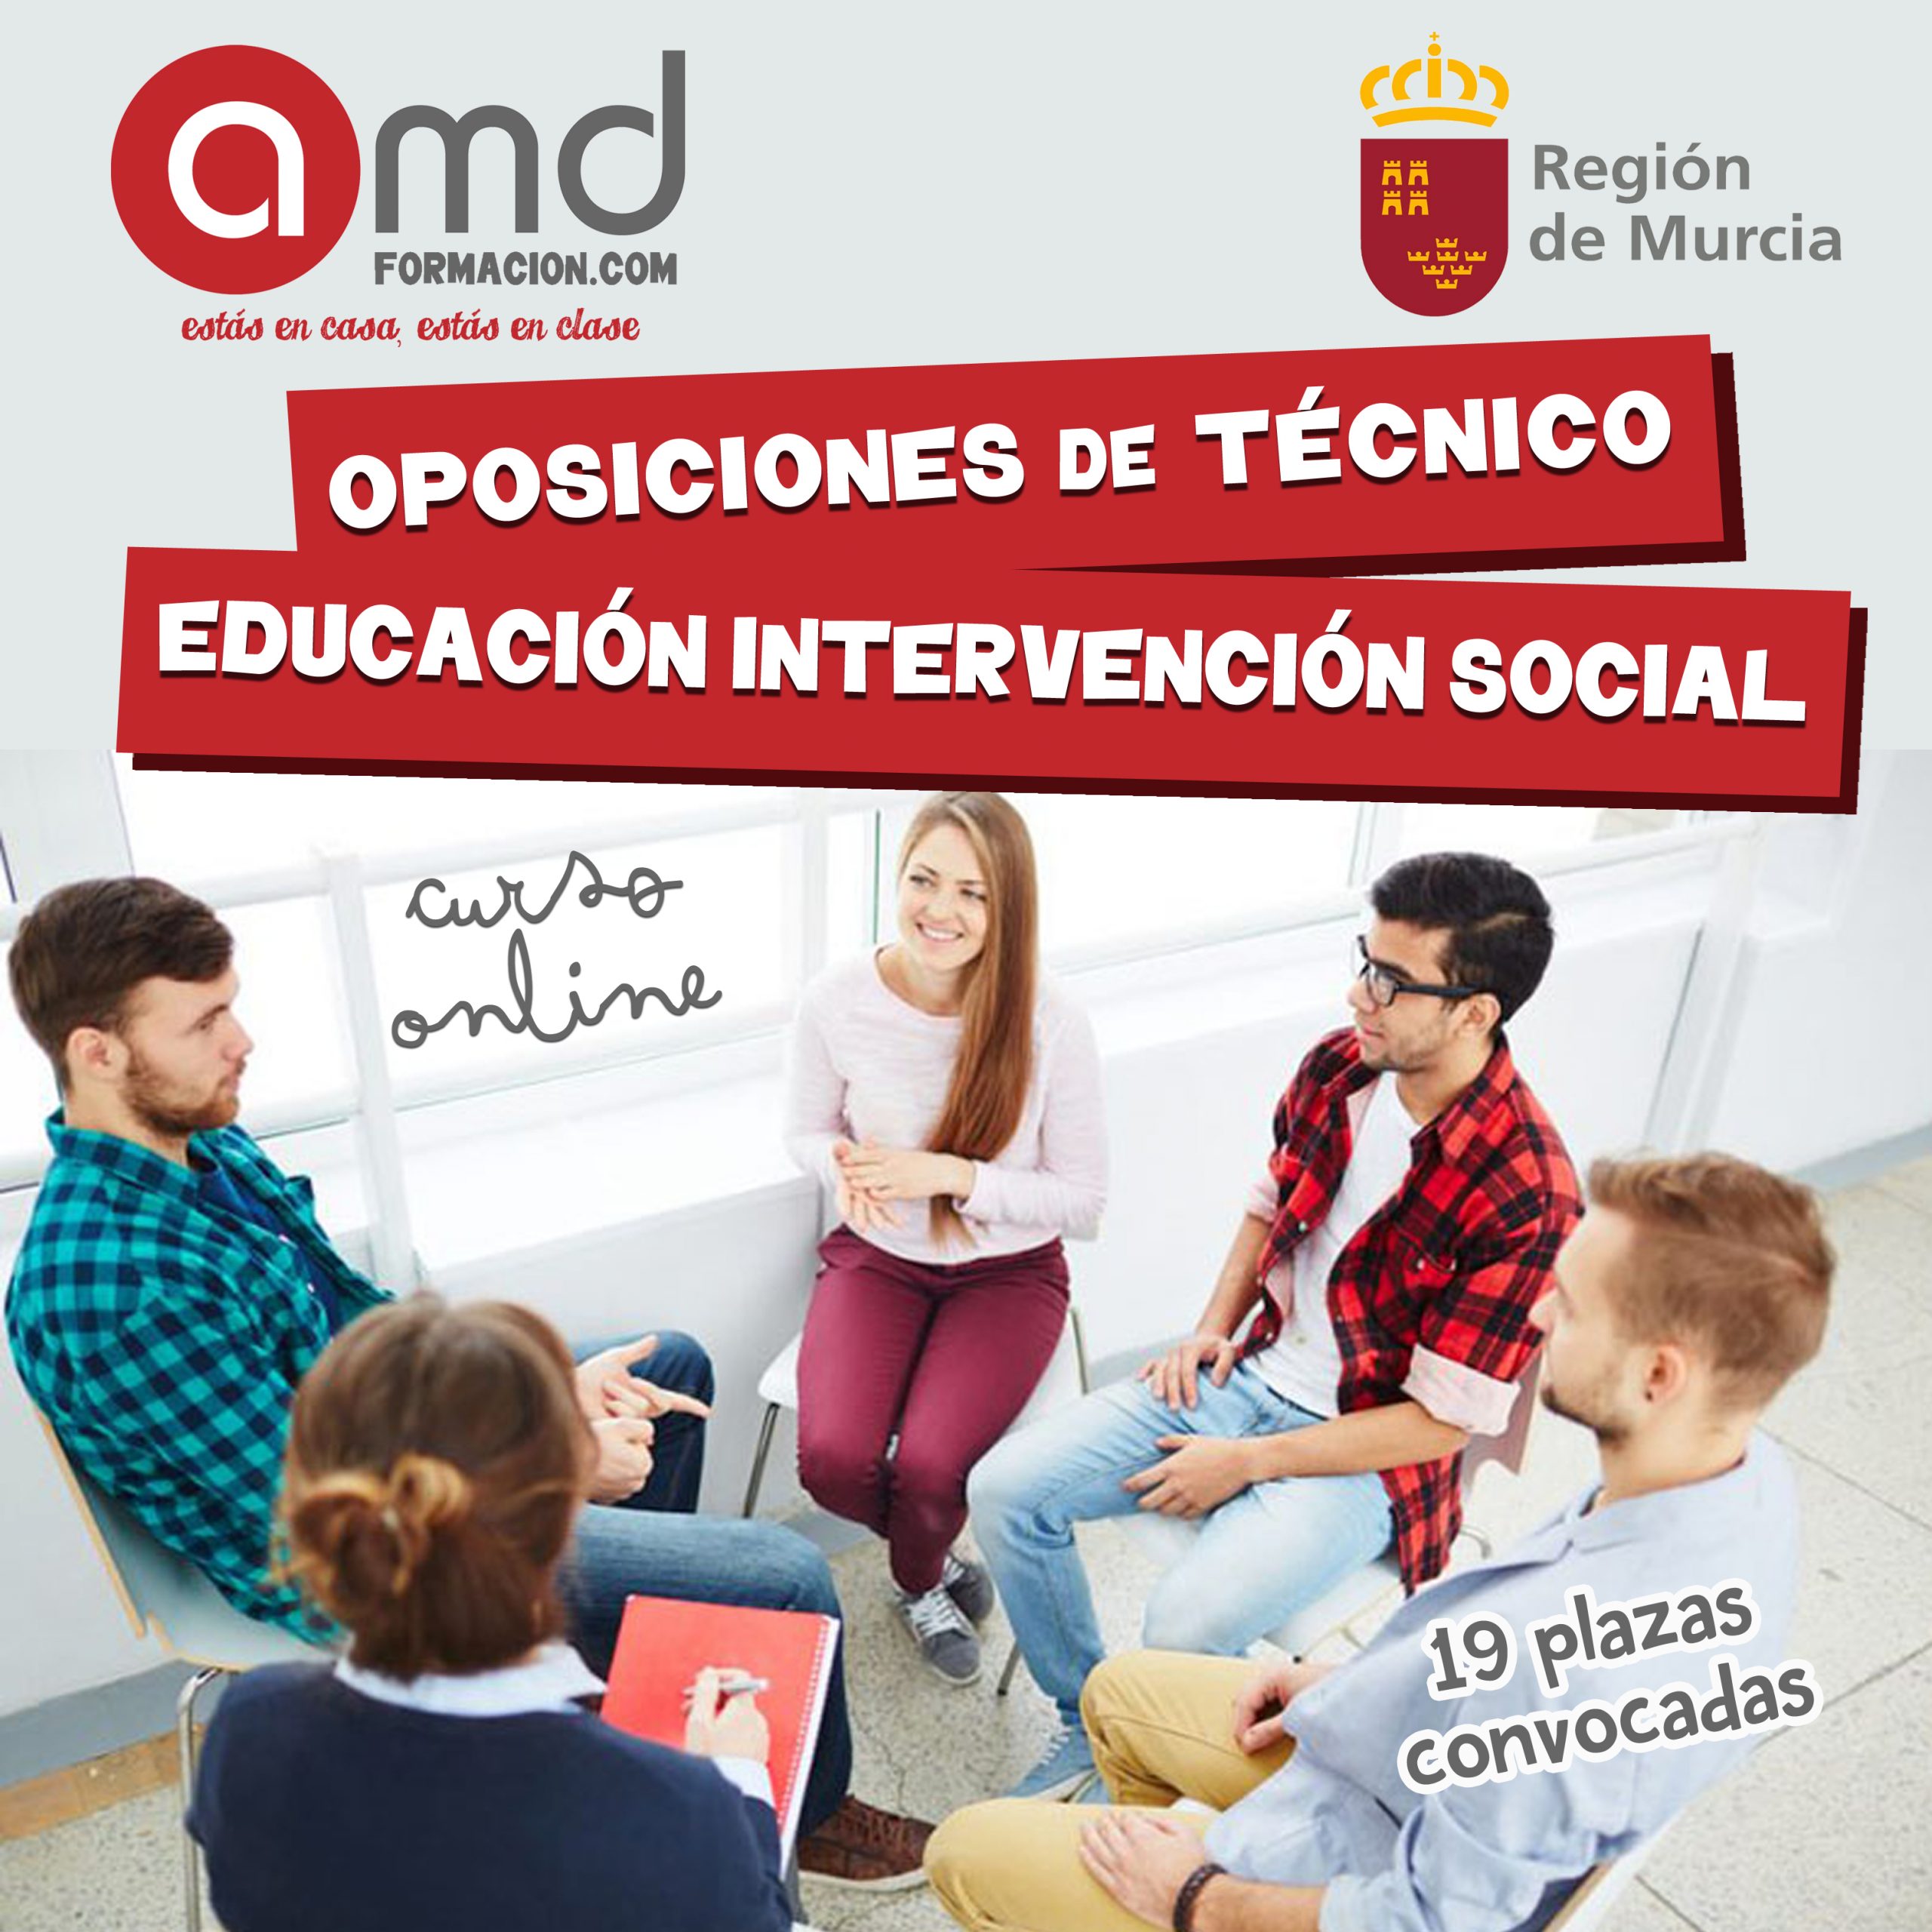 Técnico Edución Intervención Social Murcia